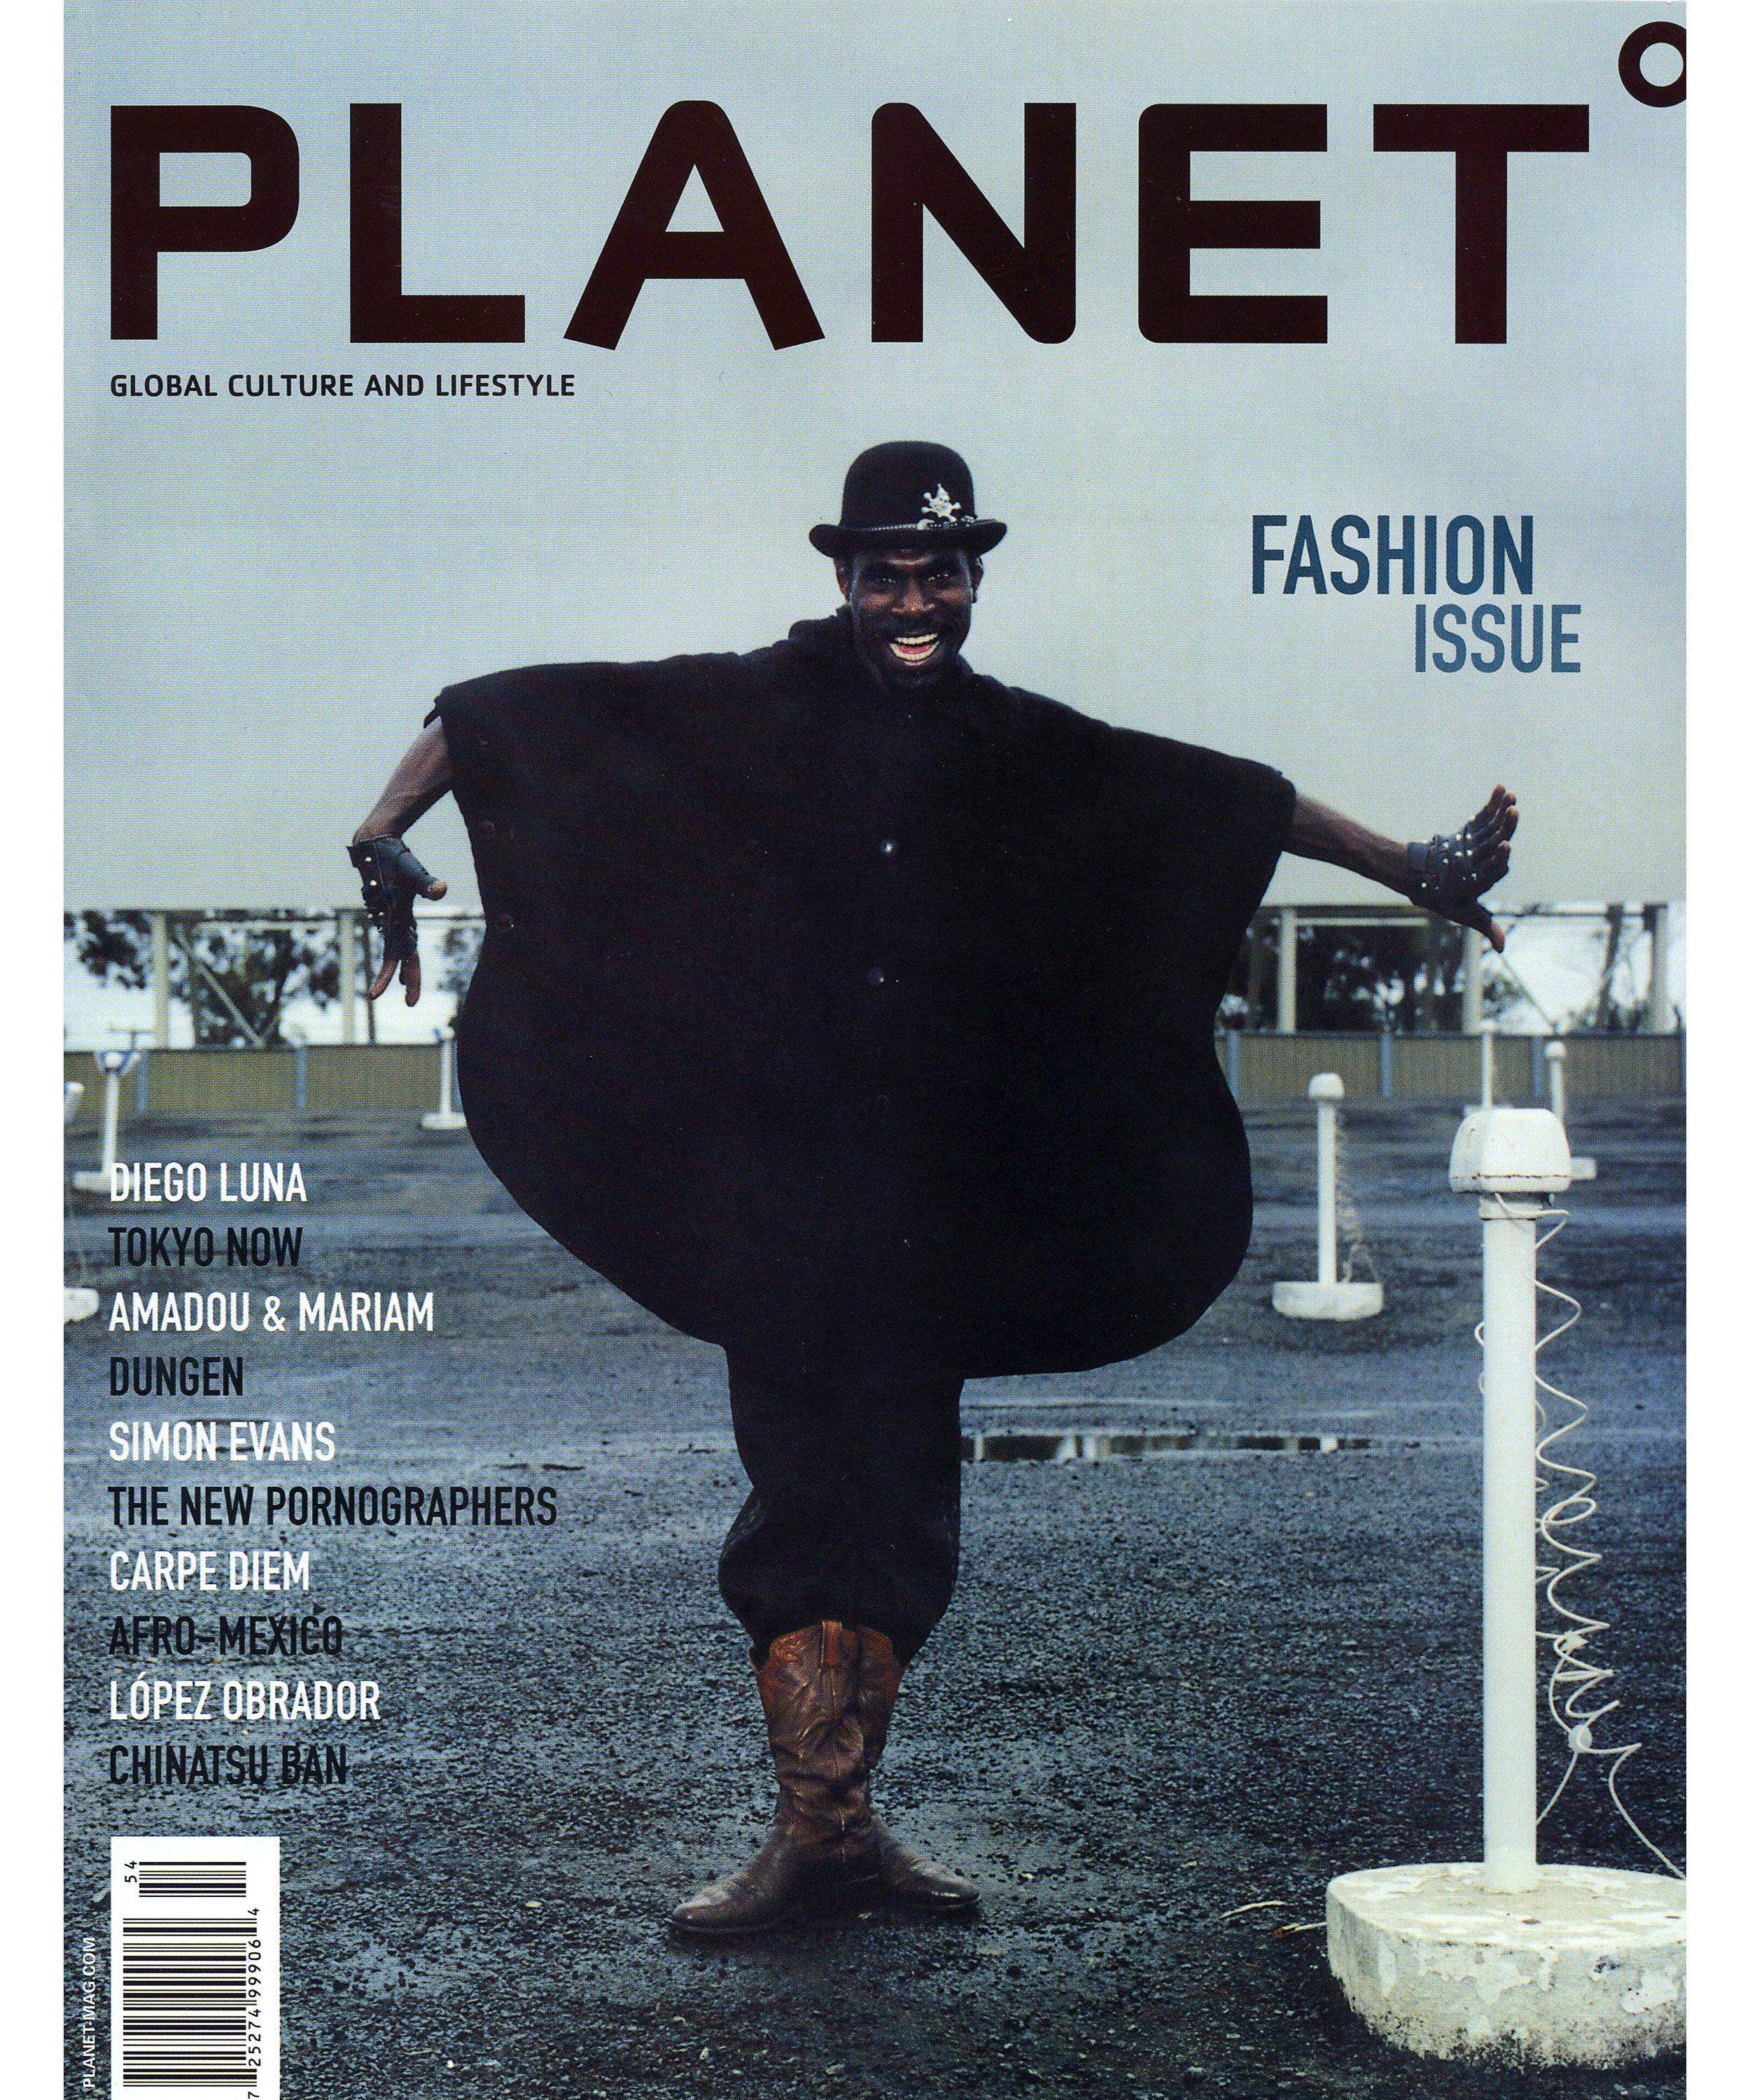 PlanetMAG_FashionIssue_COVER_00.jpg